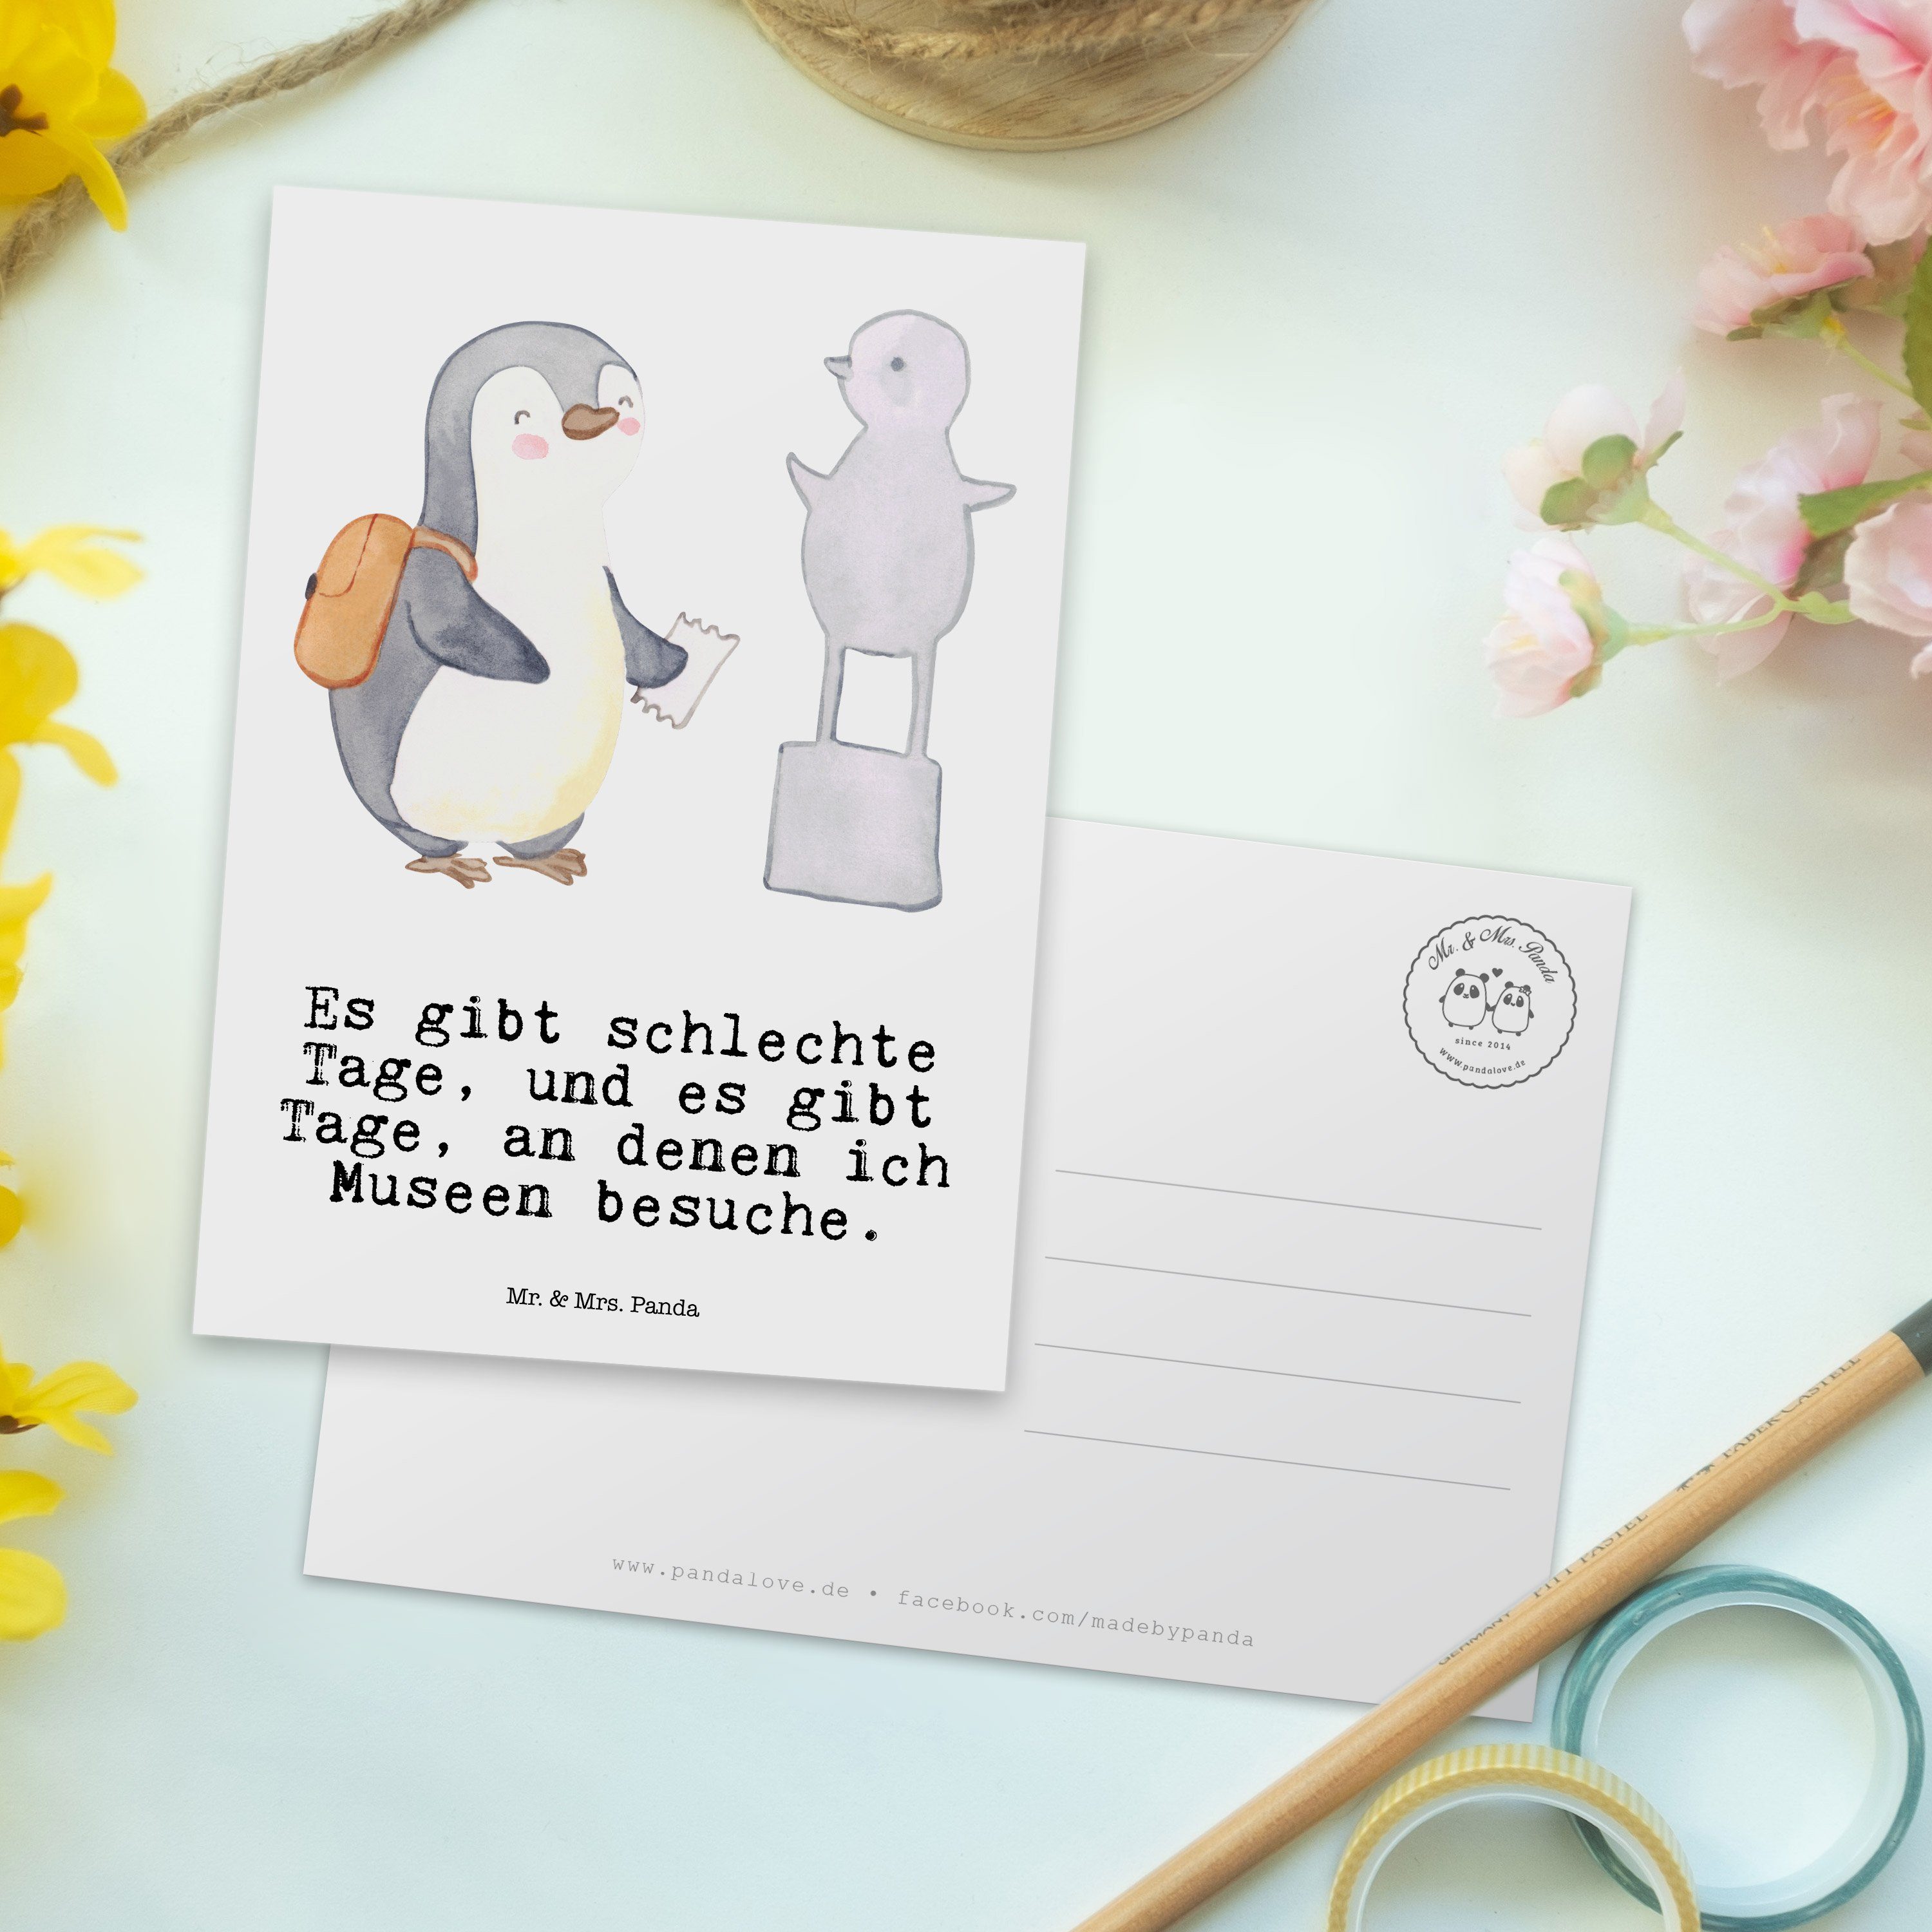 Mr. & Mrs. - Auszeichnung, Weiß Museen Museum Panda Tage Postkarte Pinguin - besuchen Geschenk